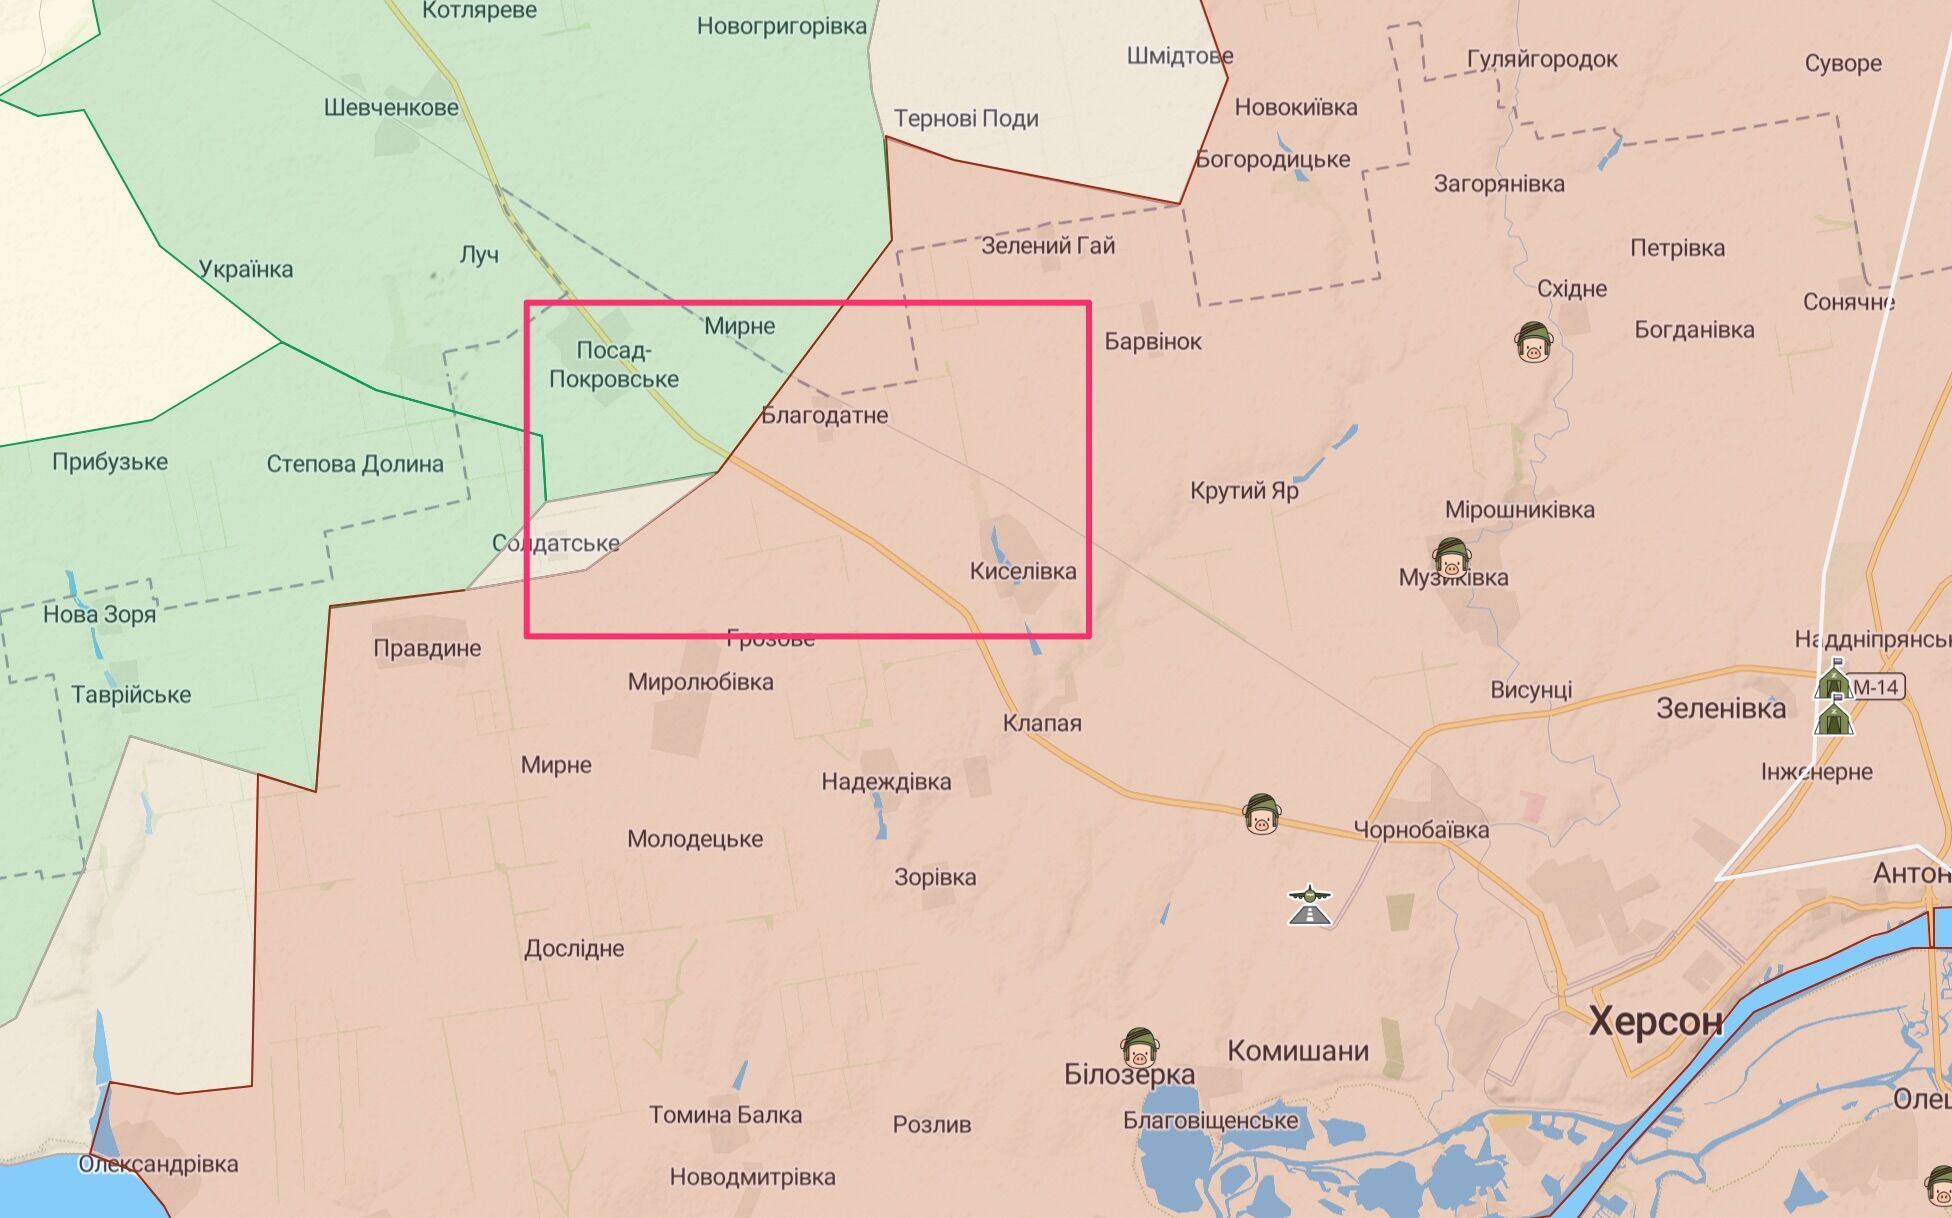 38 ОМСБр потеряла боеспособность в районе Посад-Покровского